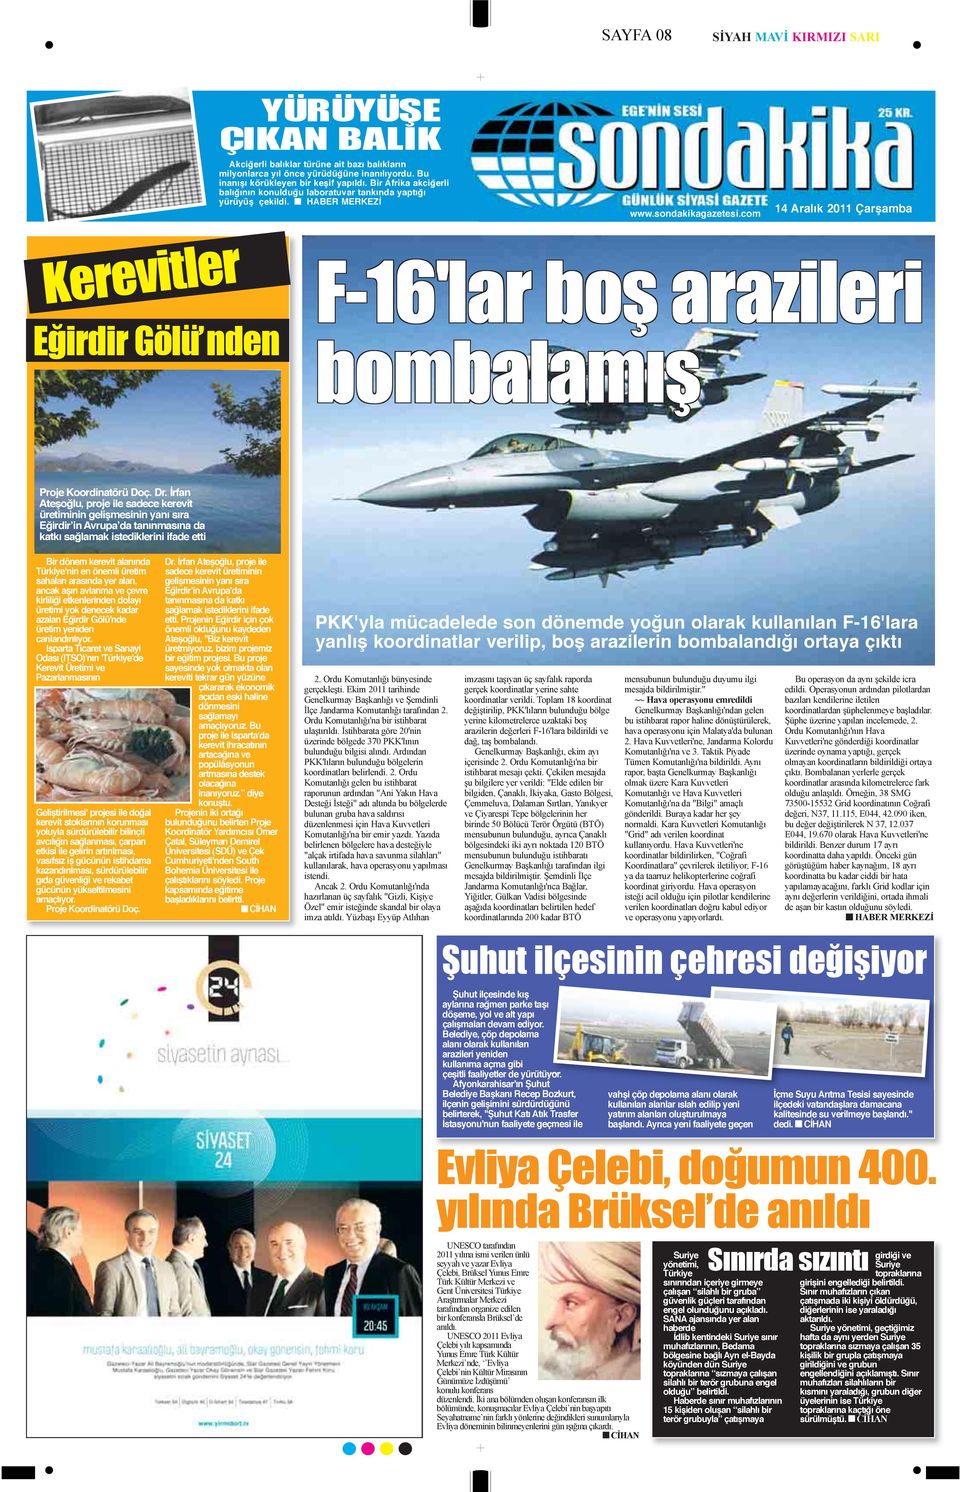 com 14 Aralık 2011 Çarşamba Kerevitler Eğirdir Gölü nden F-16'lar boş arazileri bombalamış Proje Koordinatörü Doç. Dr.